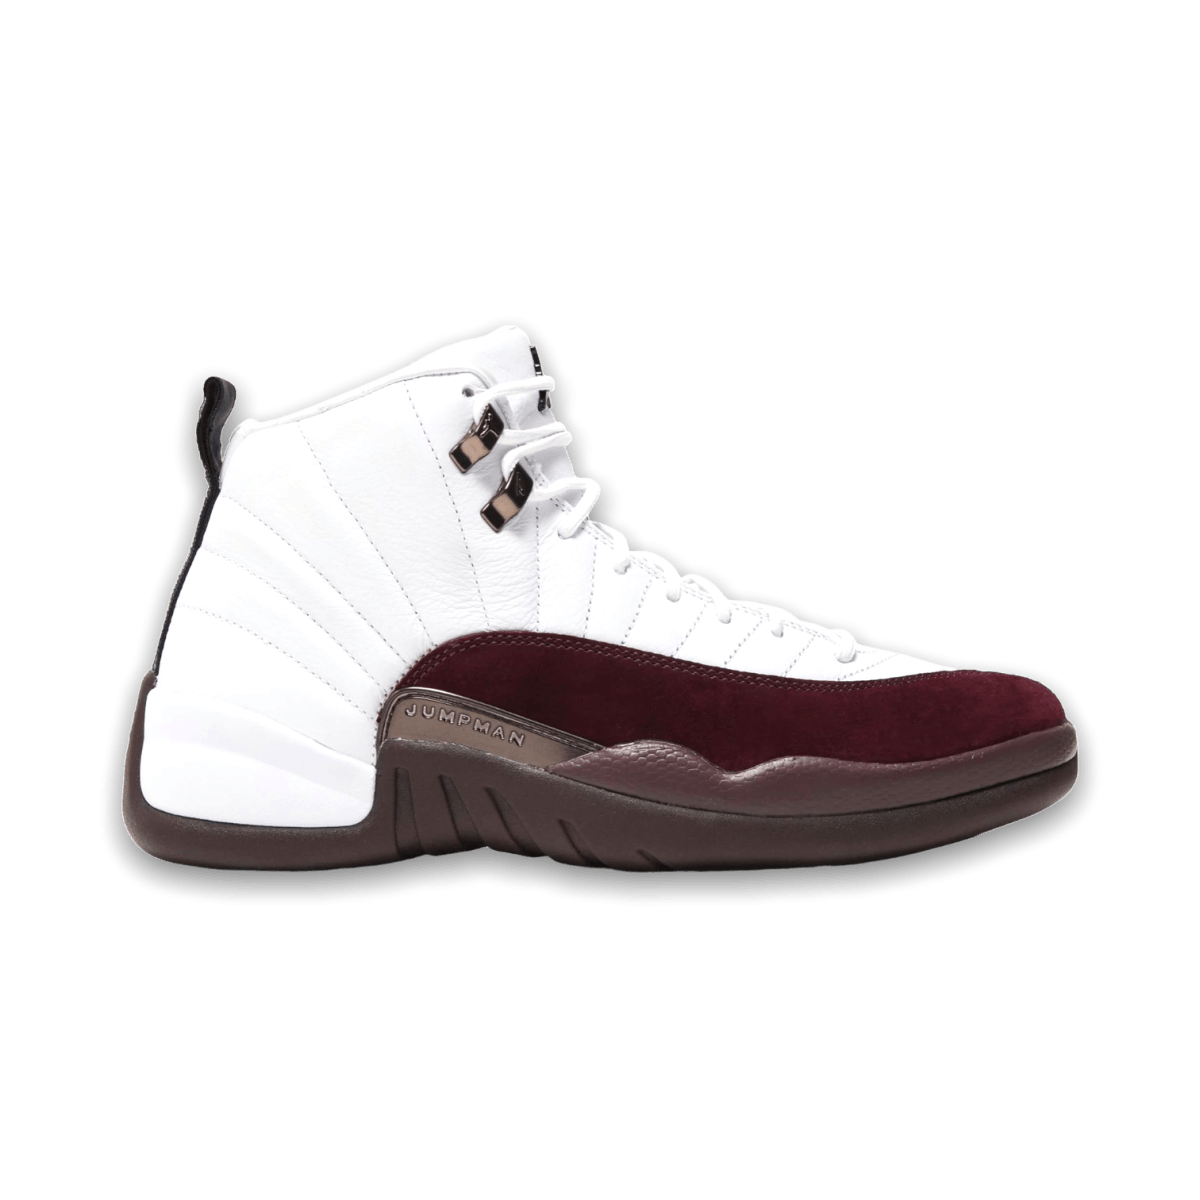 Jordan 12 Retro SP A Ma Maniére White - Women - Mid Sneaker - Jawns on Fire Sneakers & Streetwear